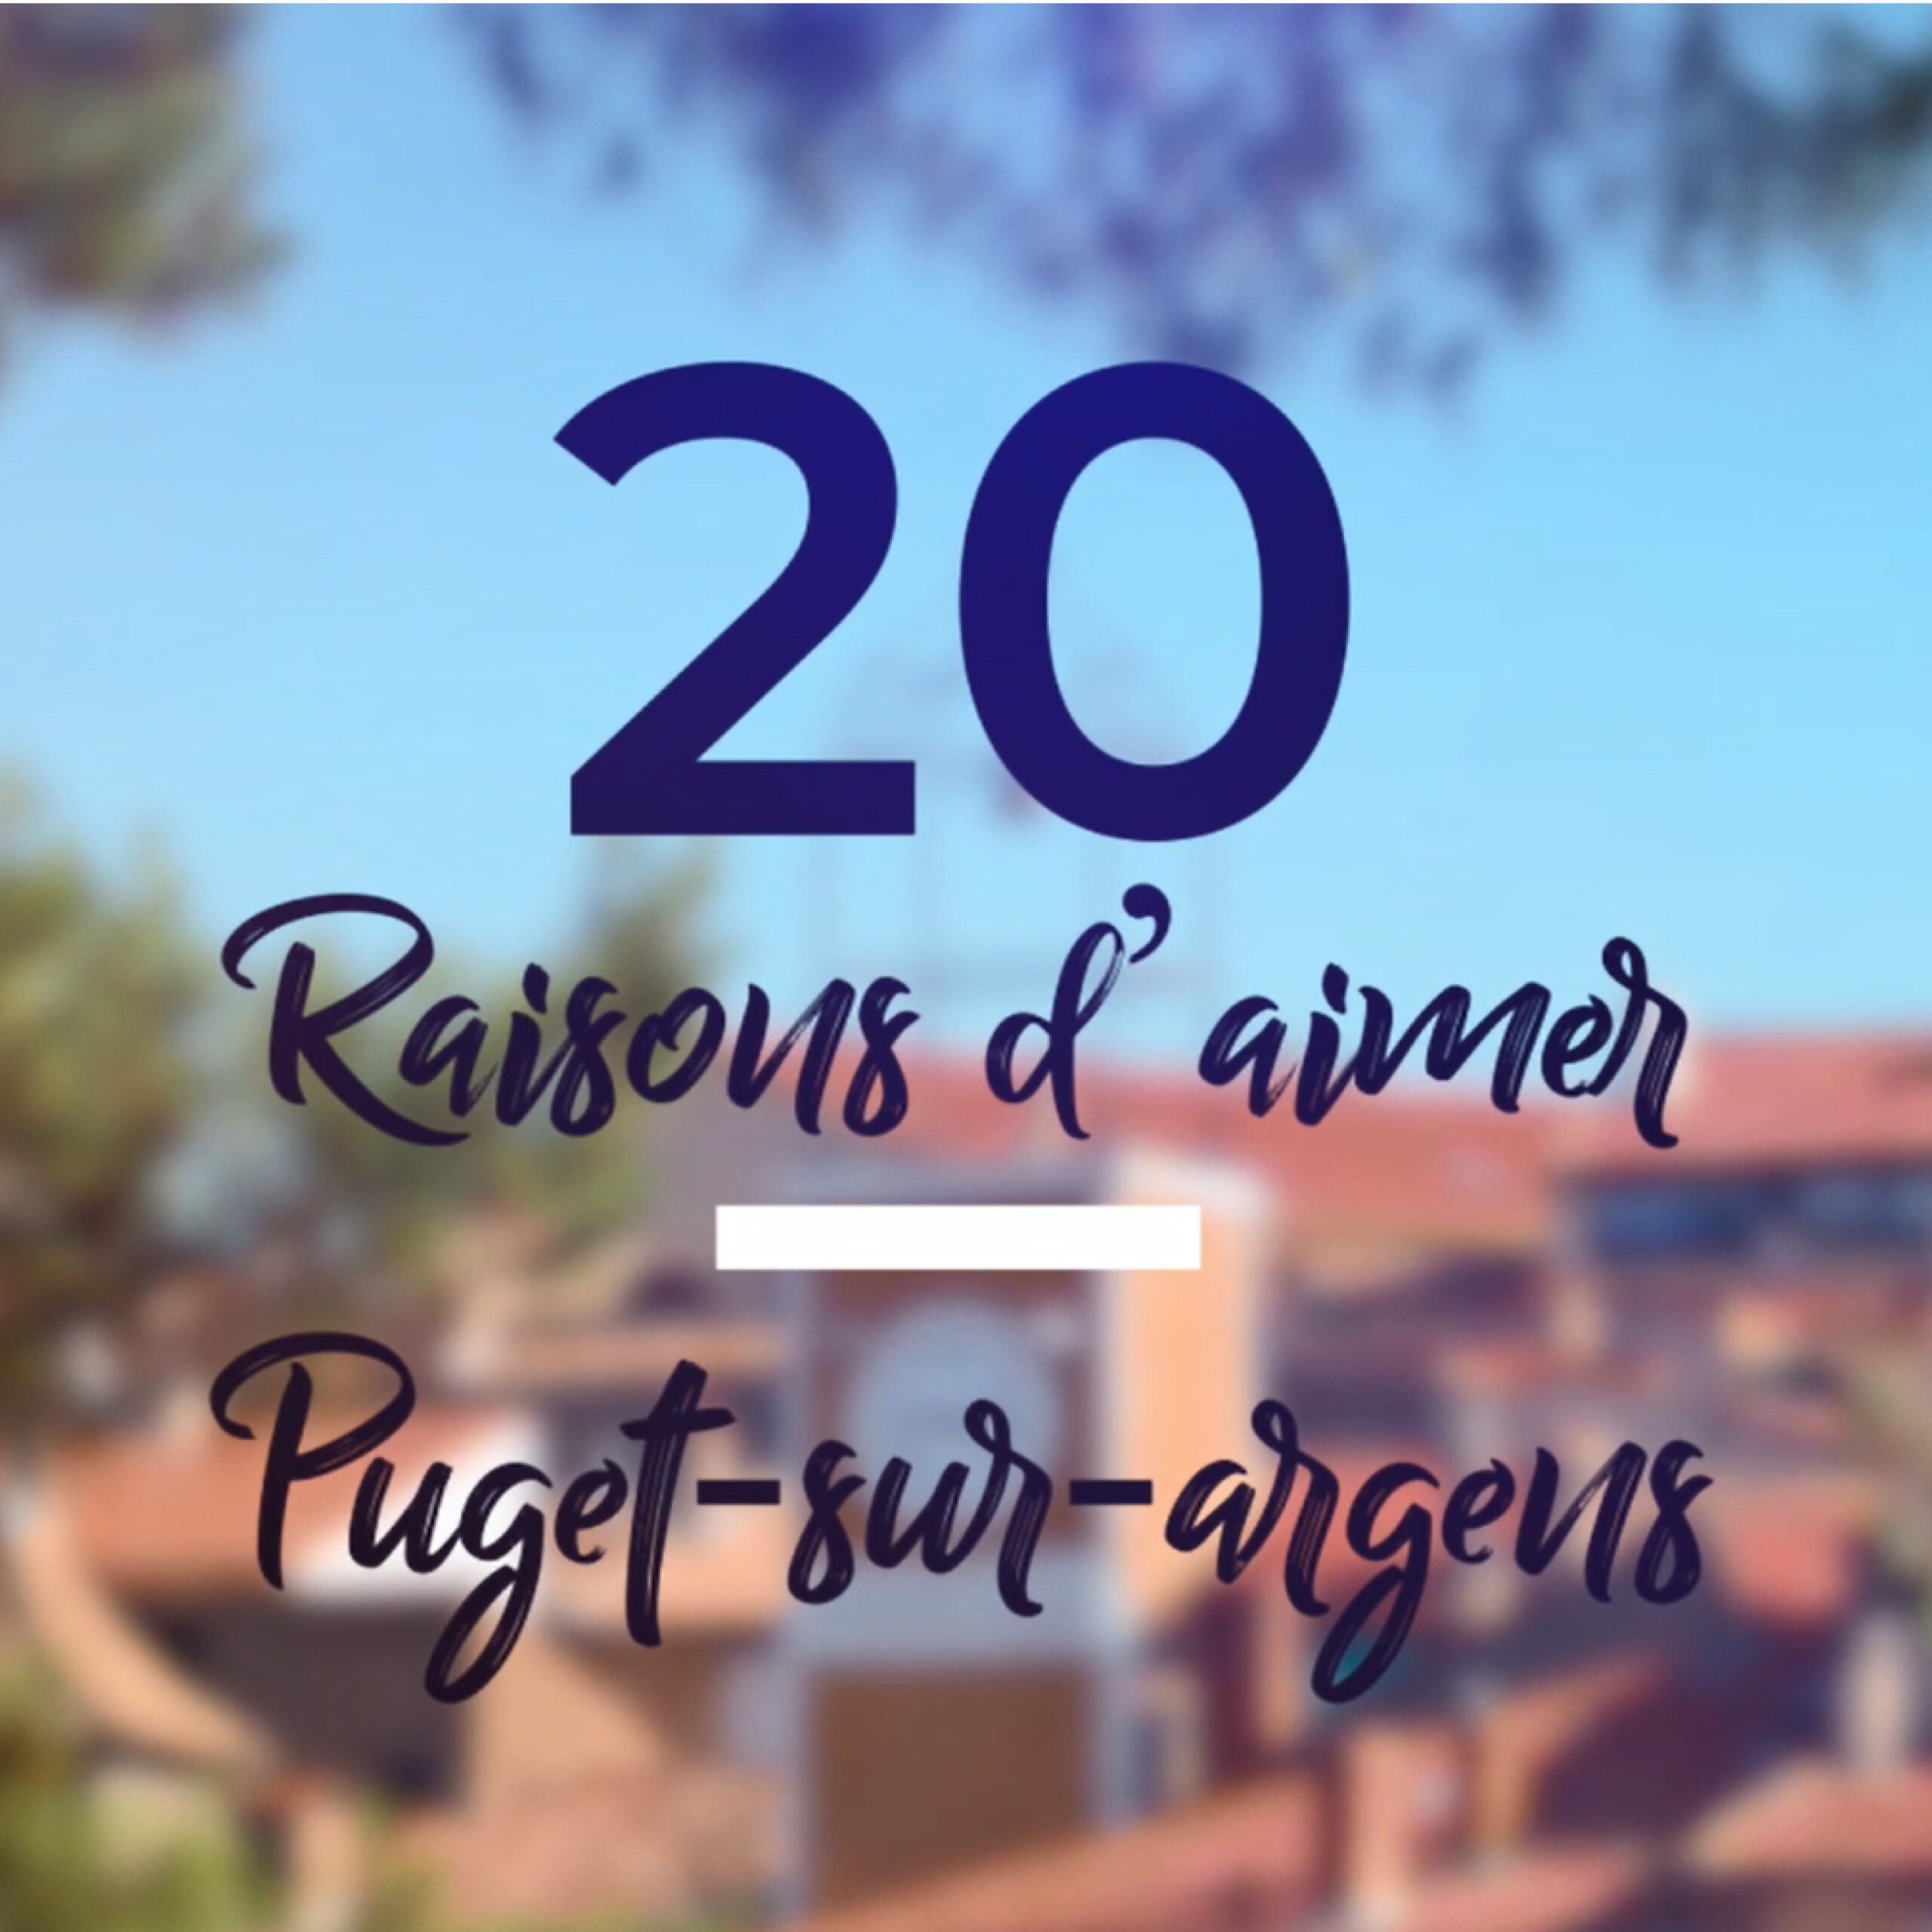 20 raisons d'aimer Puget-sur-Argens - Roxim